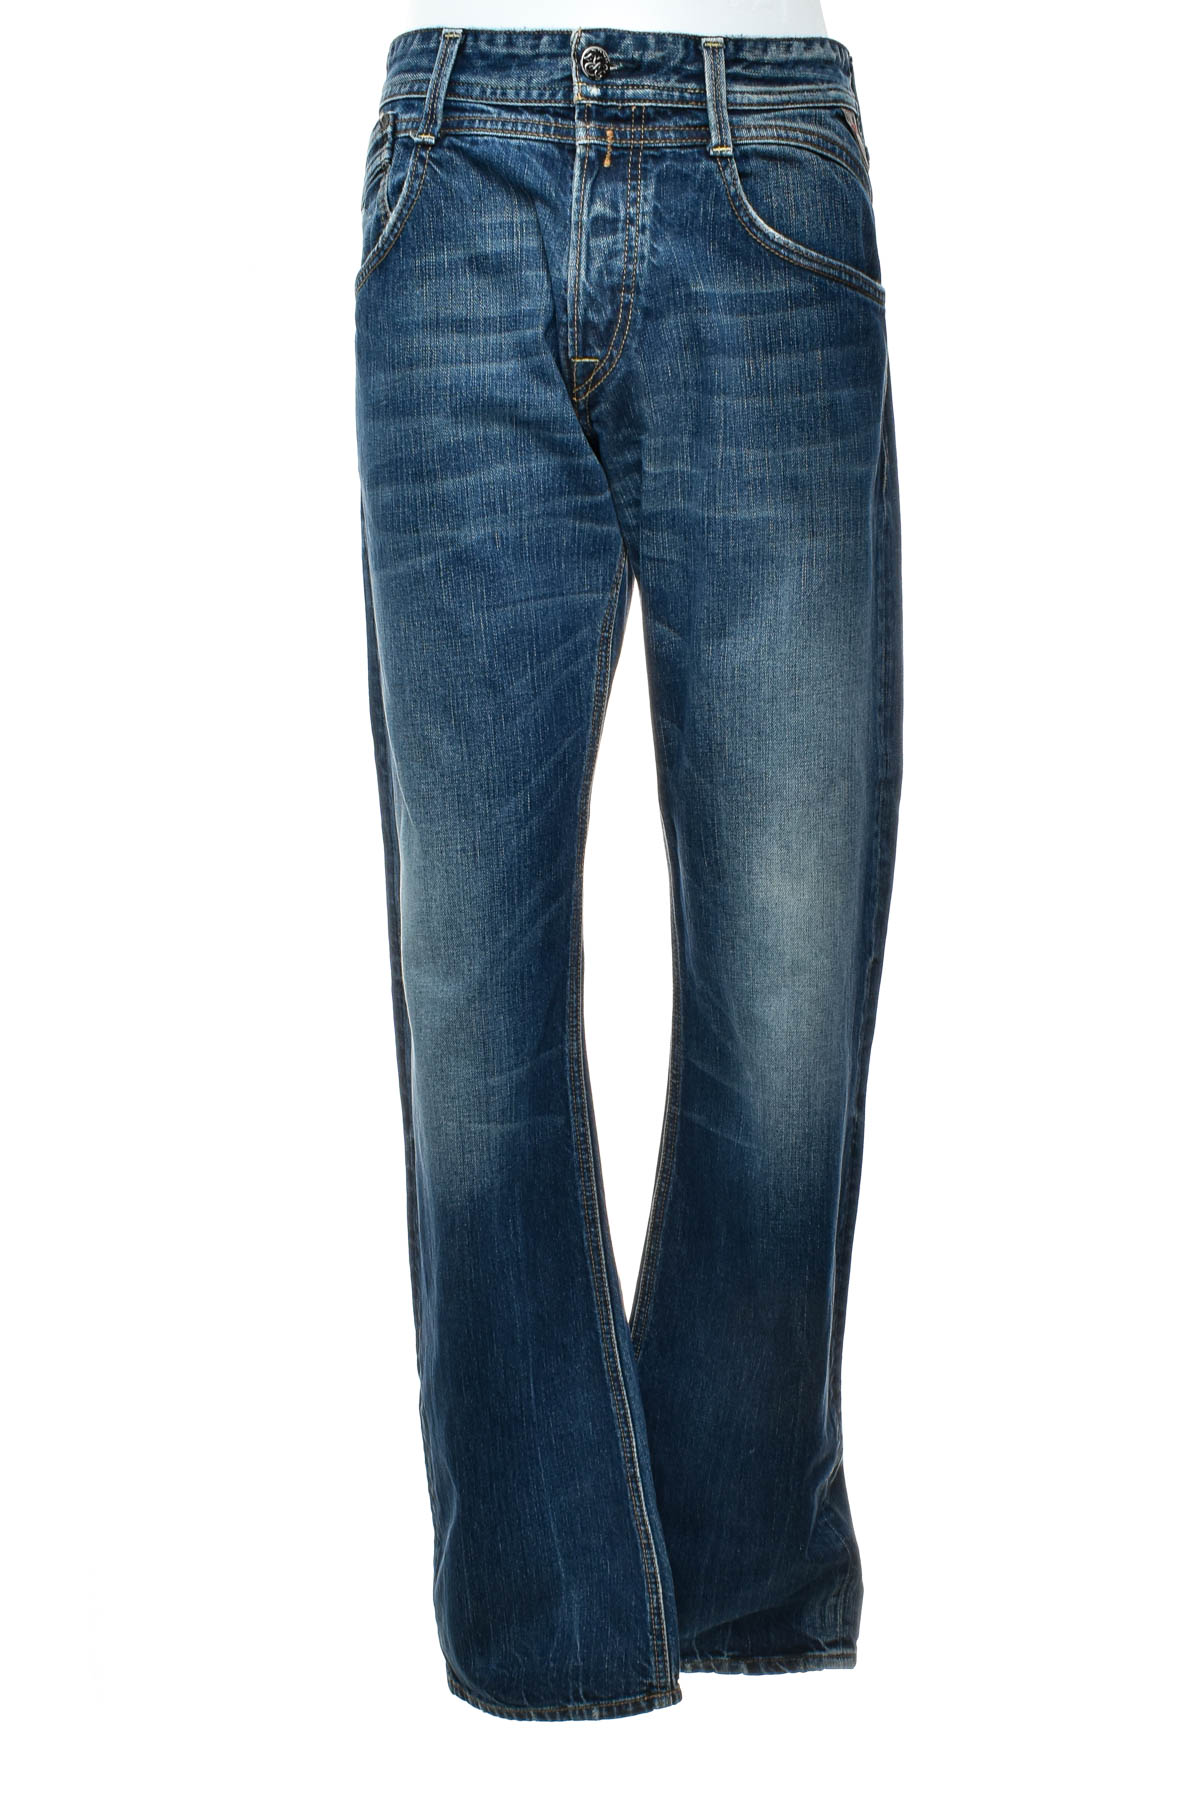 Jeans pentru bărbăți - REPLAY - 0